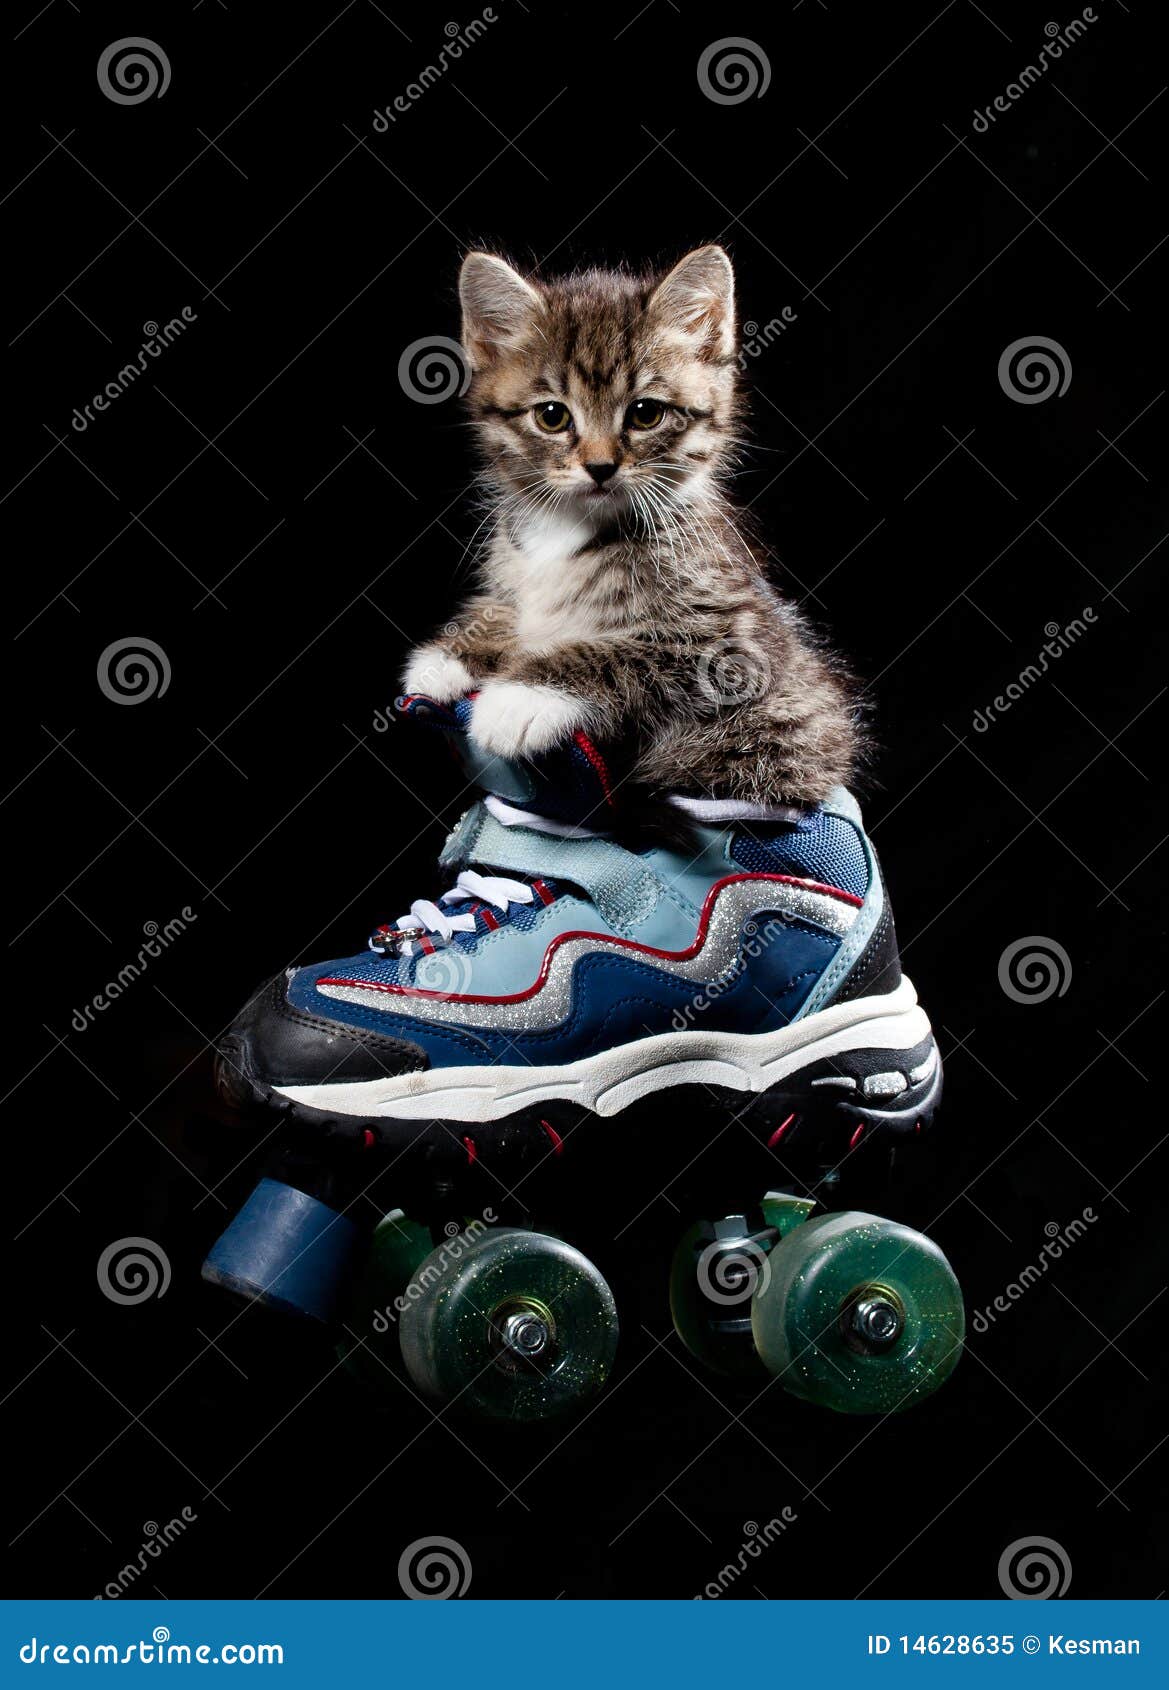 le post bonjour  - Page 15 Little-kitten-roller-skates-14628635